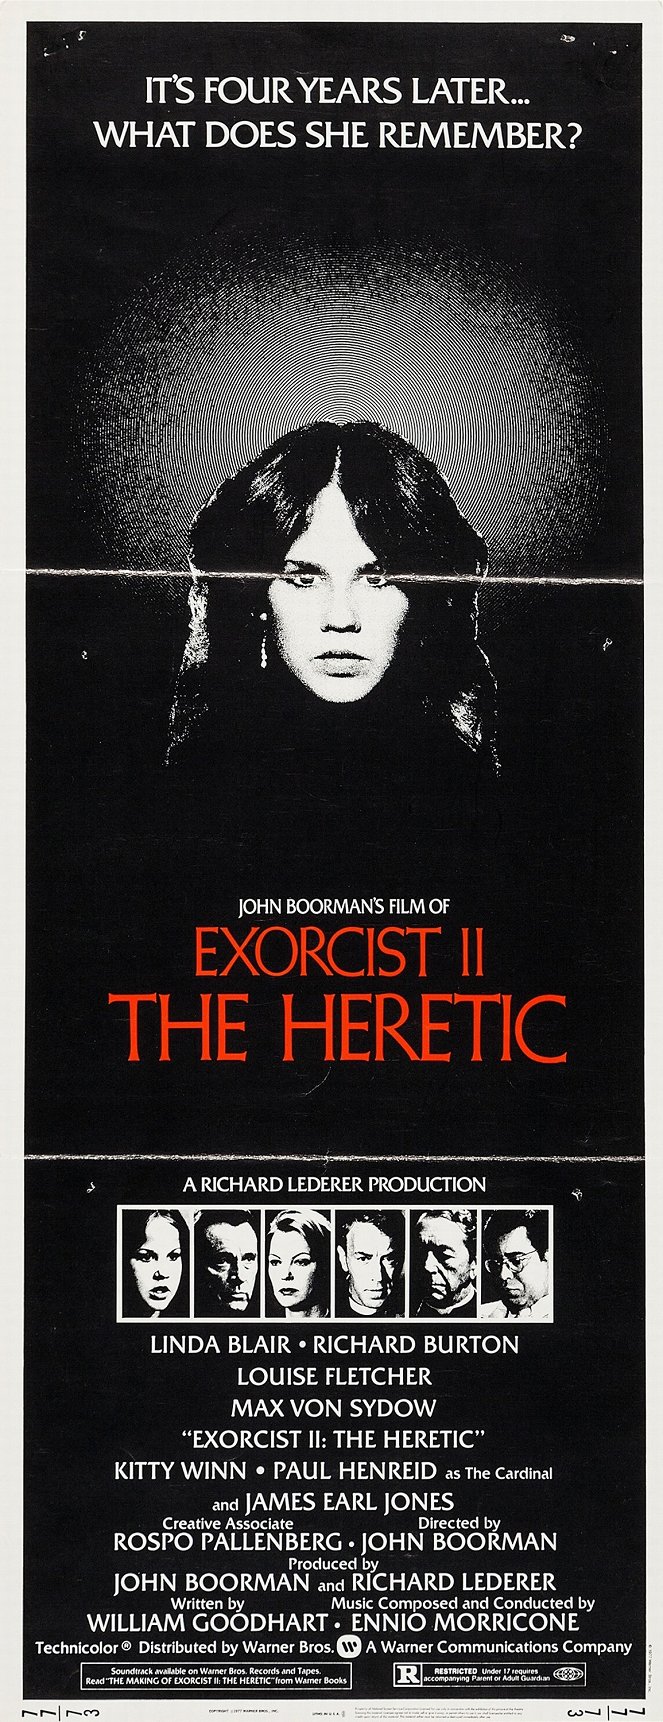 L'Exorciste II : L'hérétique - Affiches